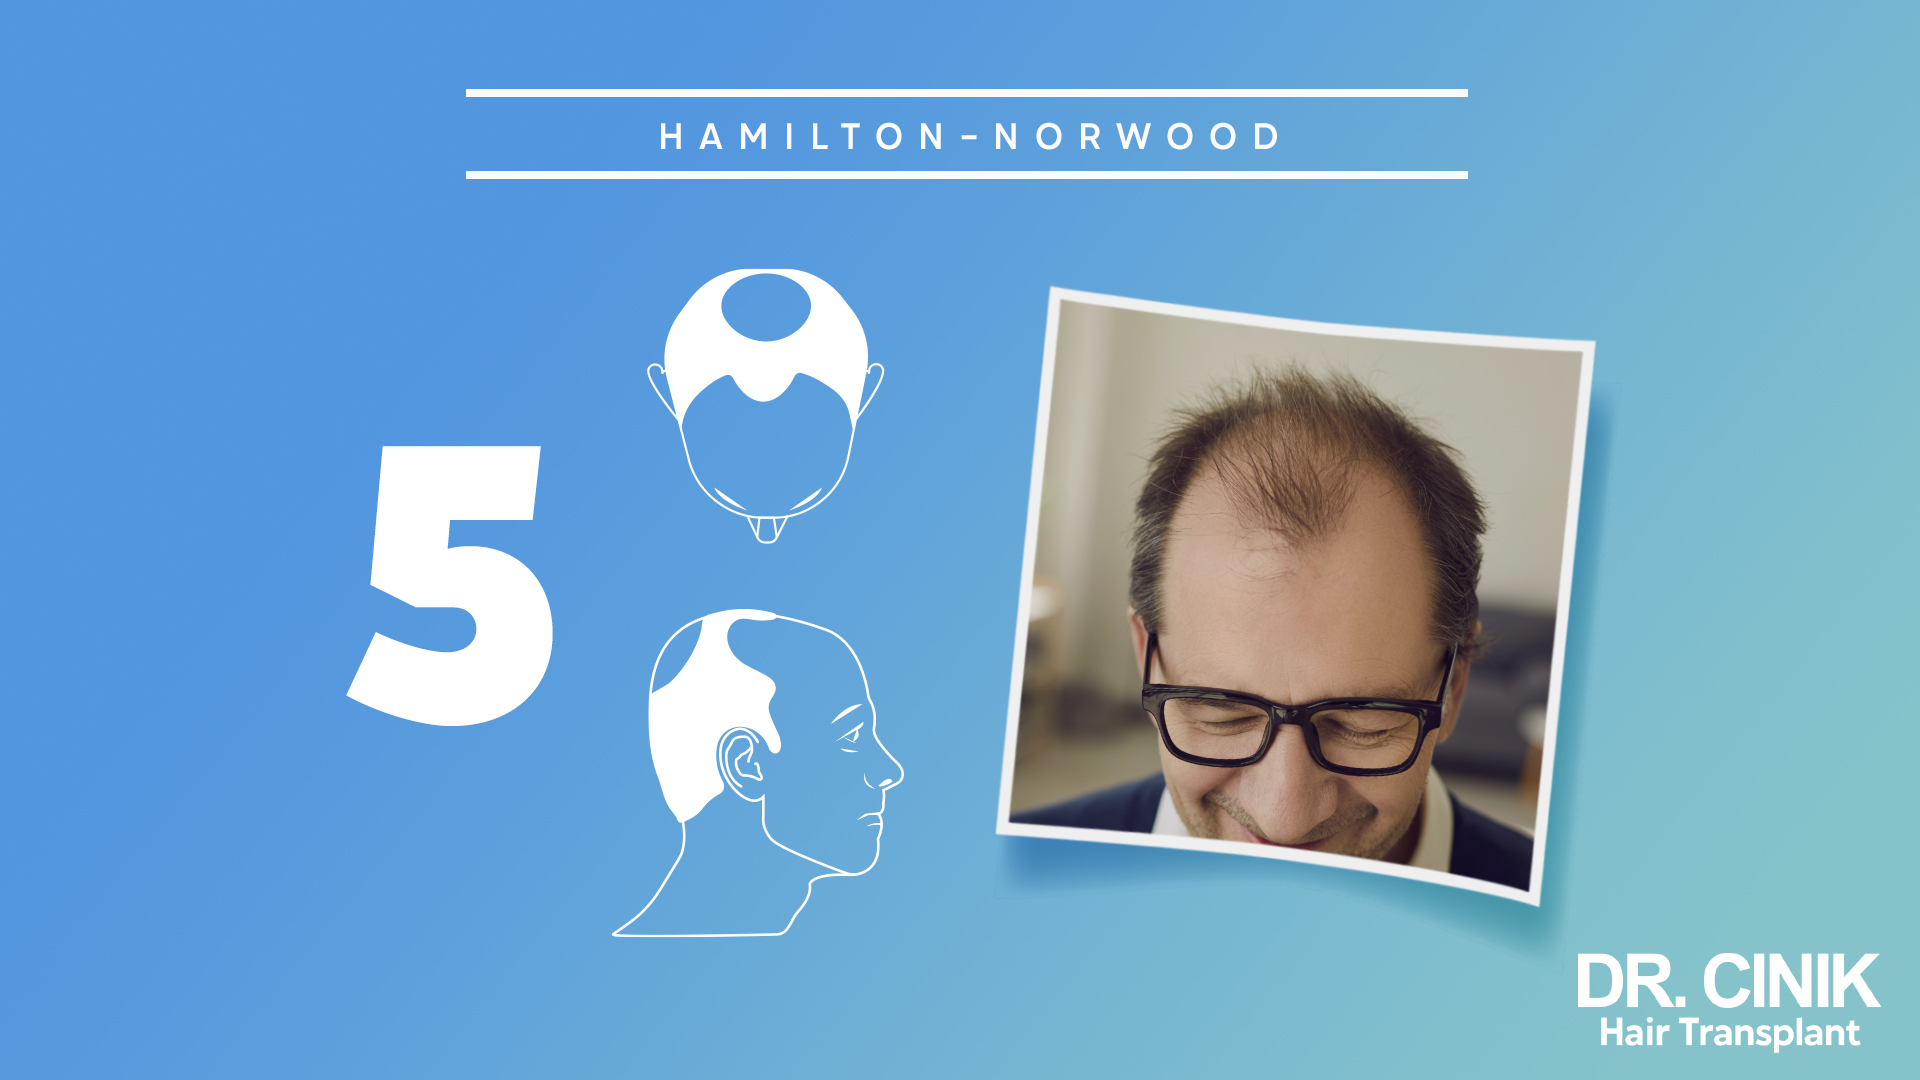 Esta gráfica representa la etapa 5 de la escala "HAMILTON-NORWOOD", que se utiliza para categorizar los niveles de pérdida de cabello en hombres.